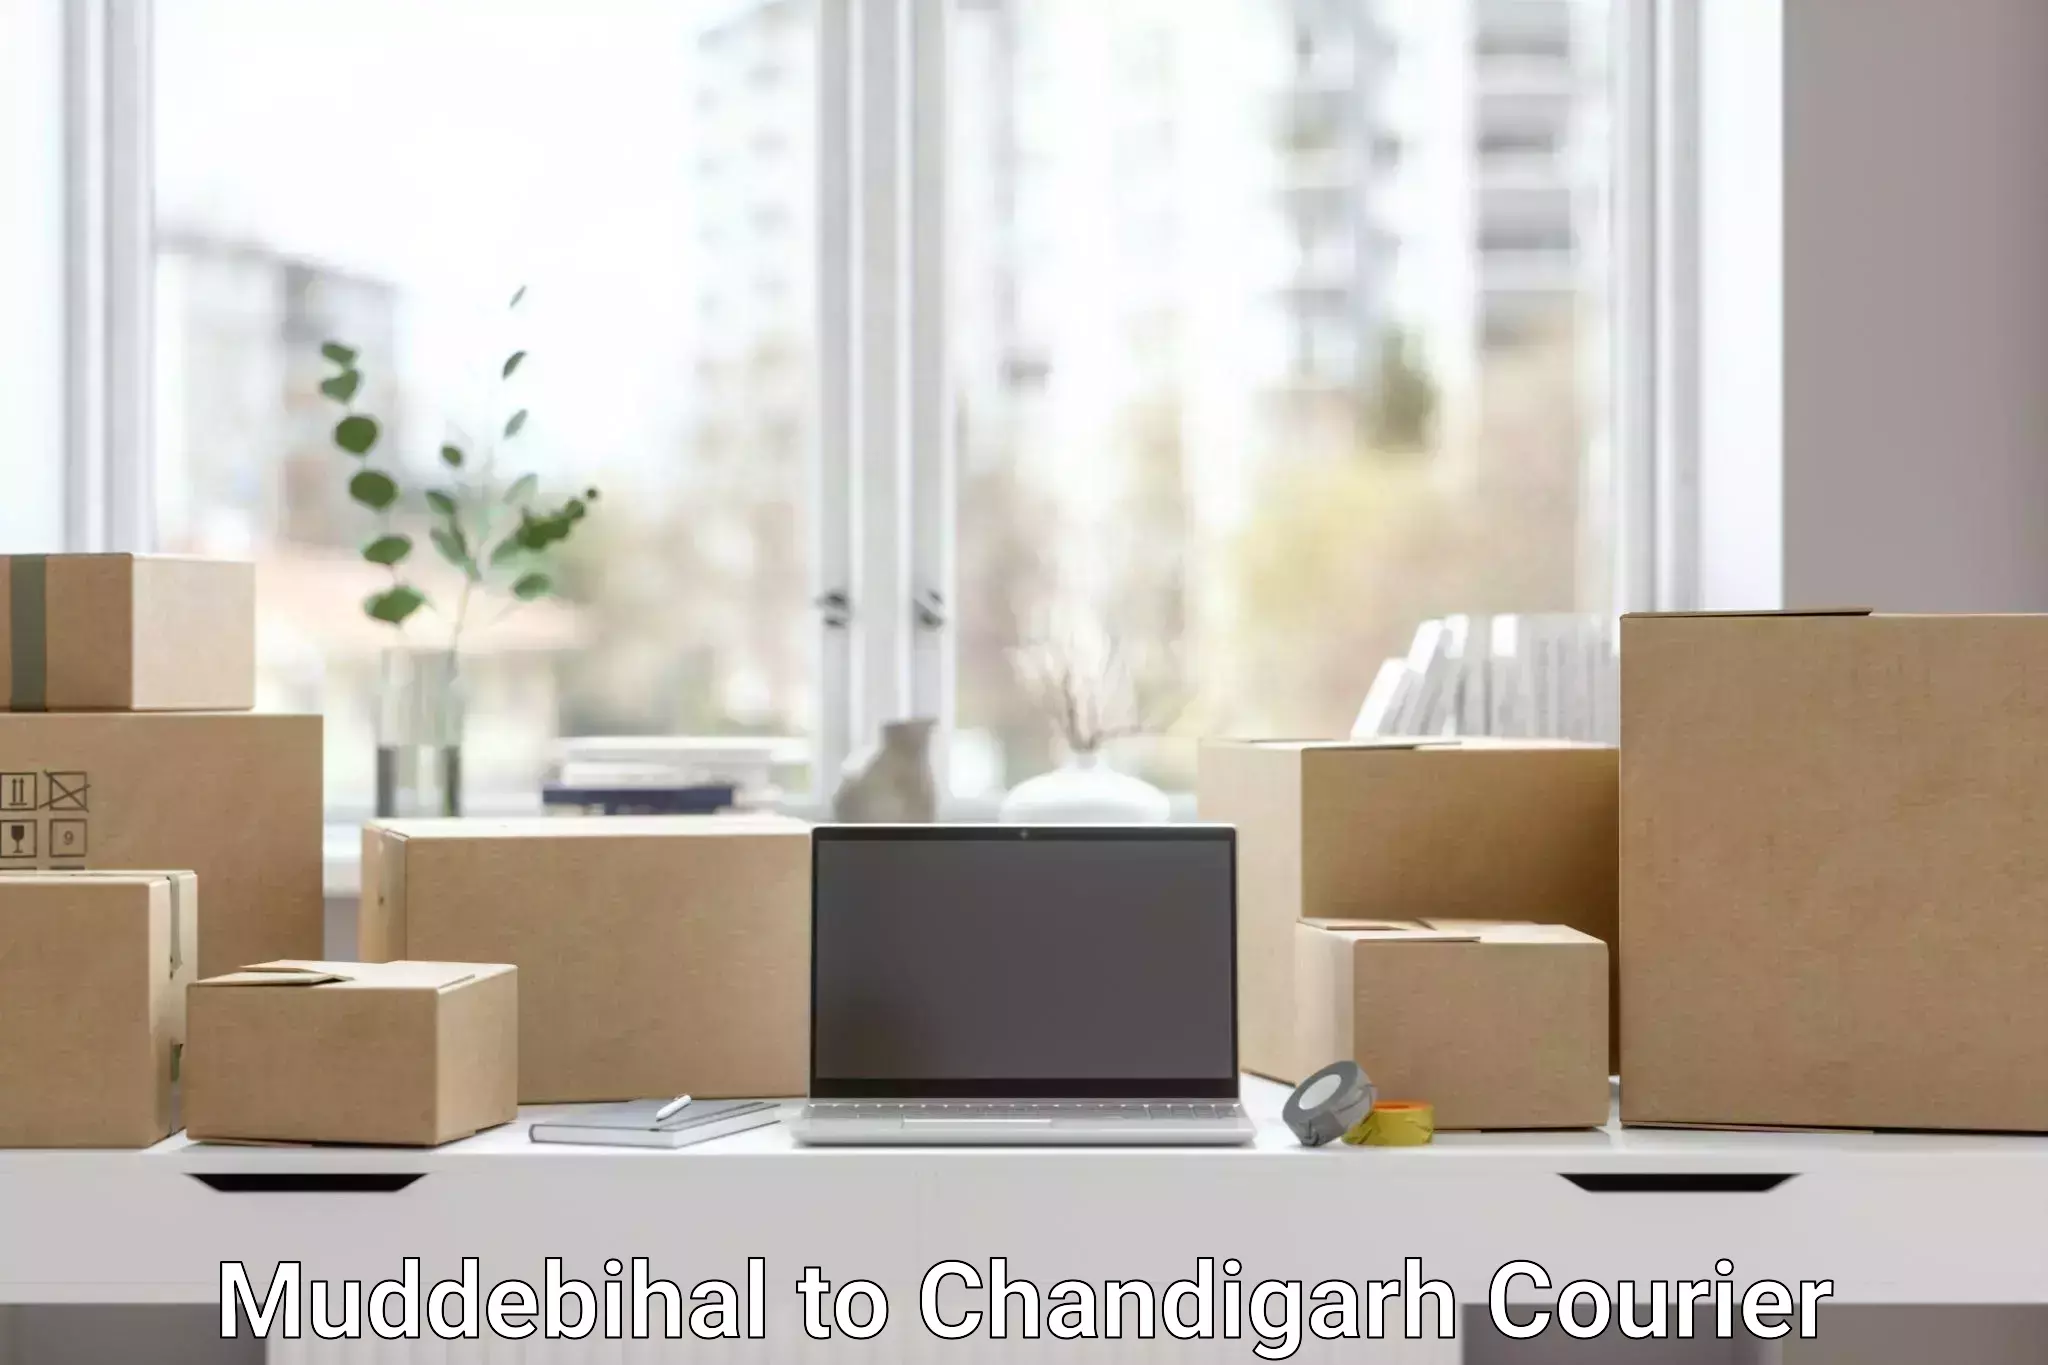 Advanced courier platforms Muddebihal to Chandigarh